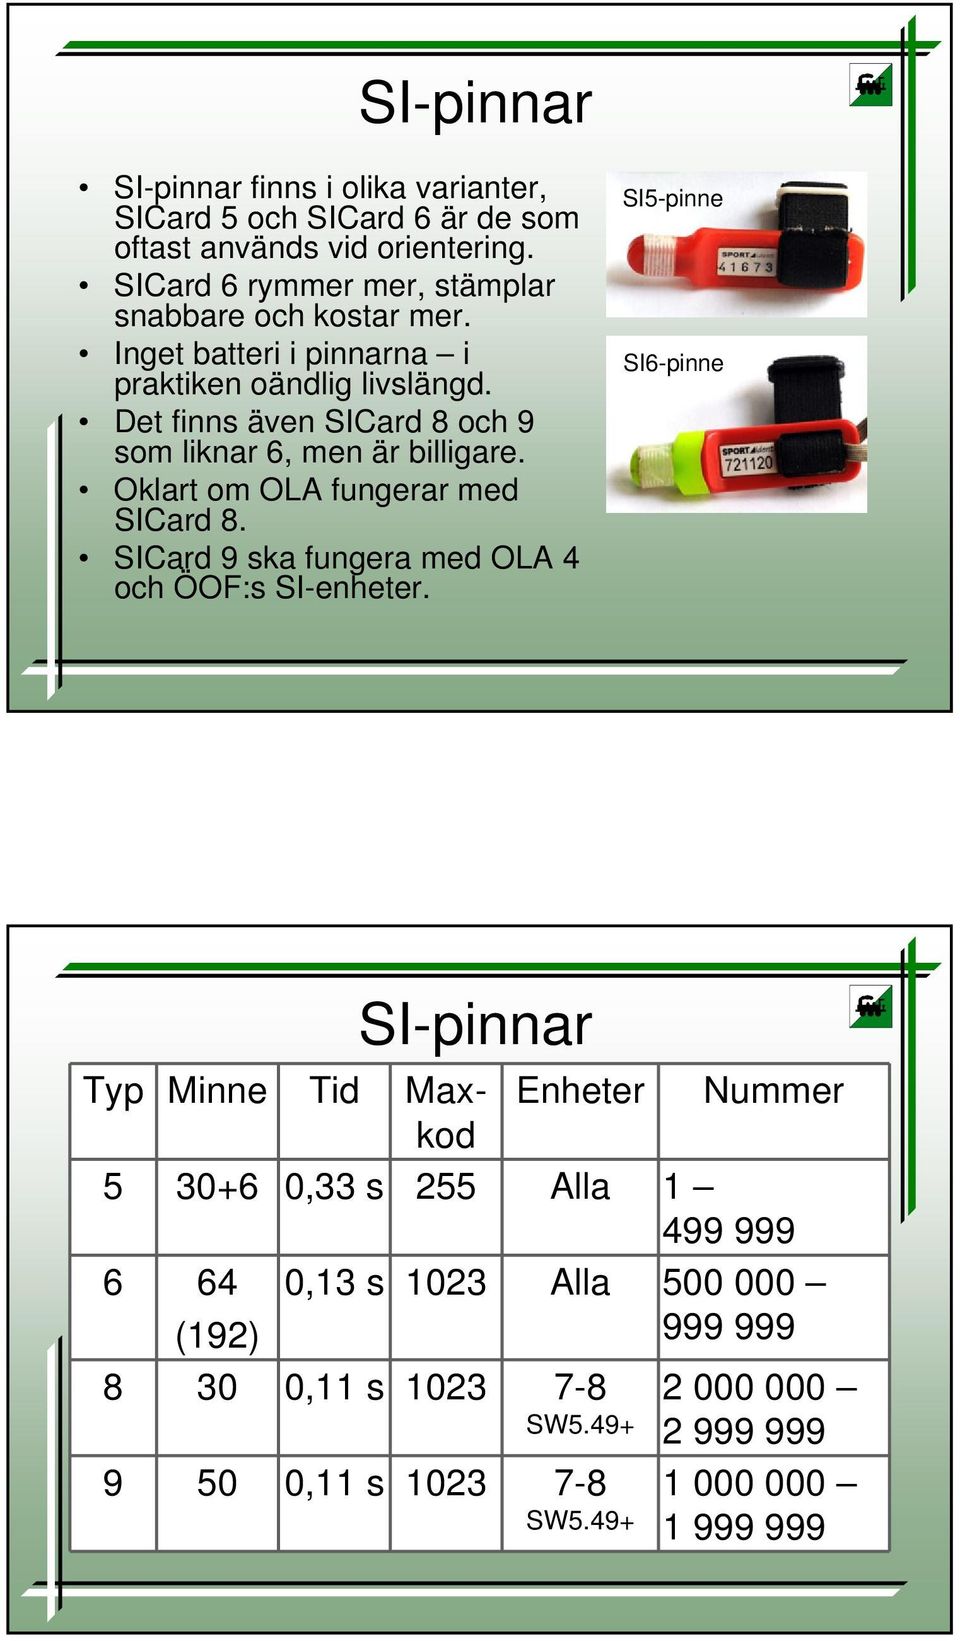 Det finns även SICard 8 och 9 som liknar 6, men är billigare. Oklart om OLA fungerar med SICard 8. SICard 9 ska fungera med OLA 4 och ÖOF:s SI-enheter.